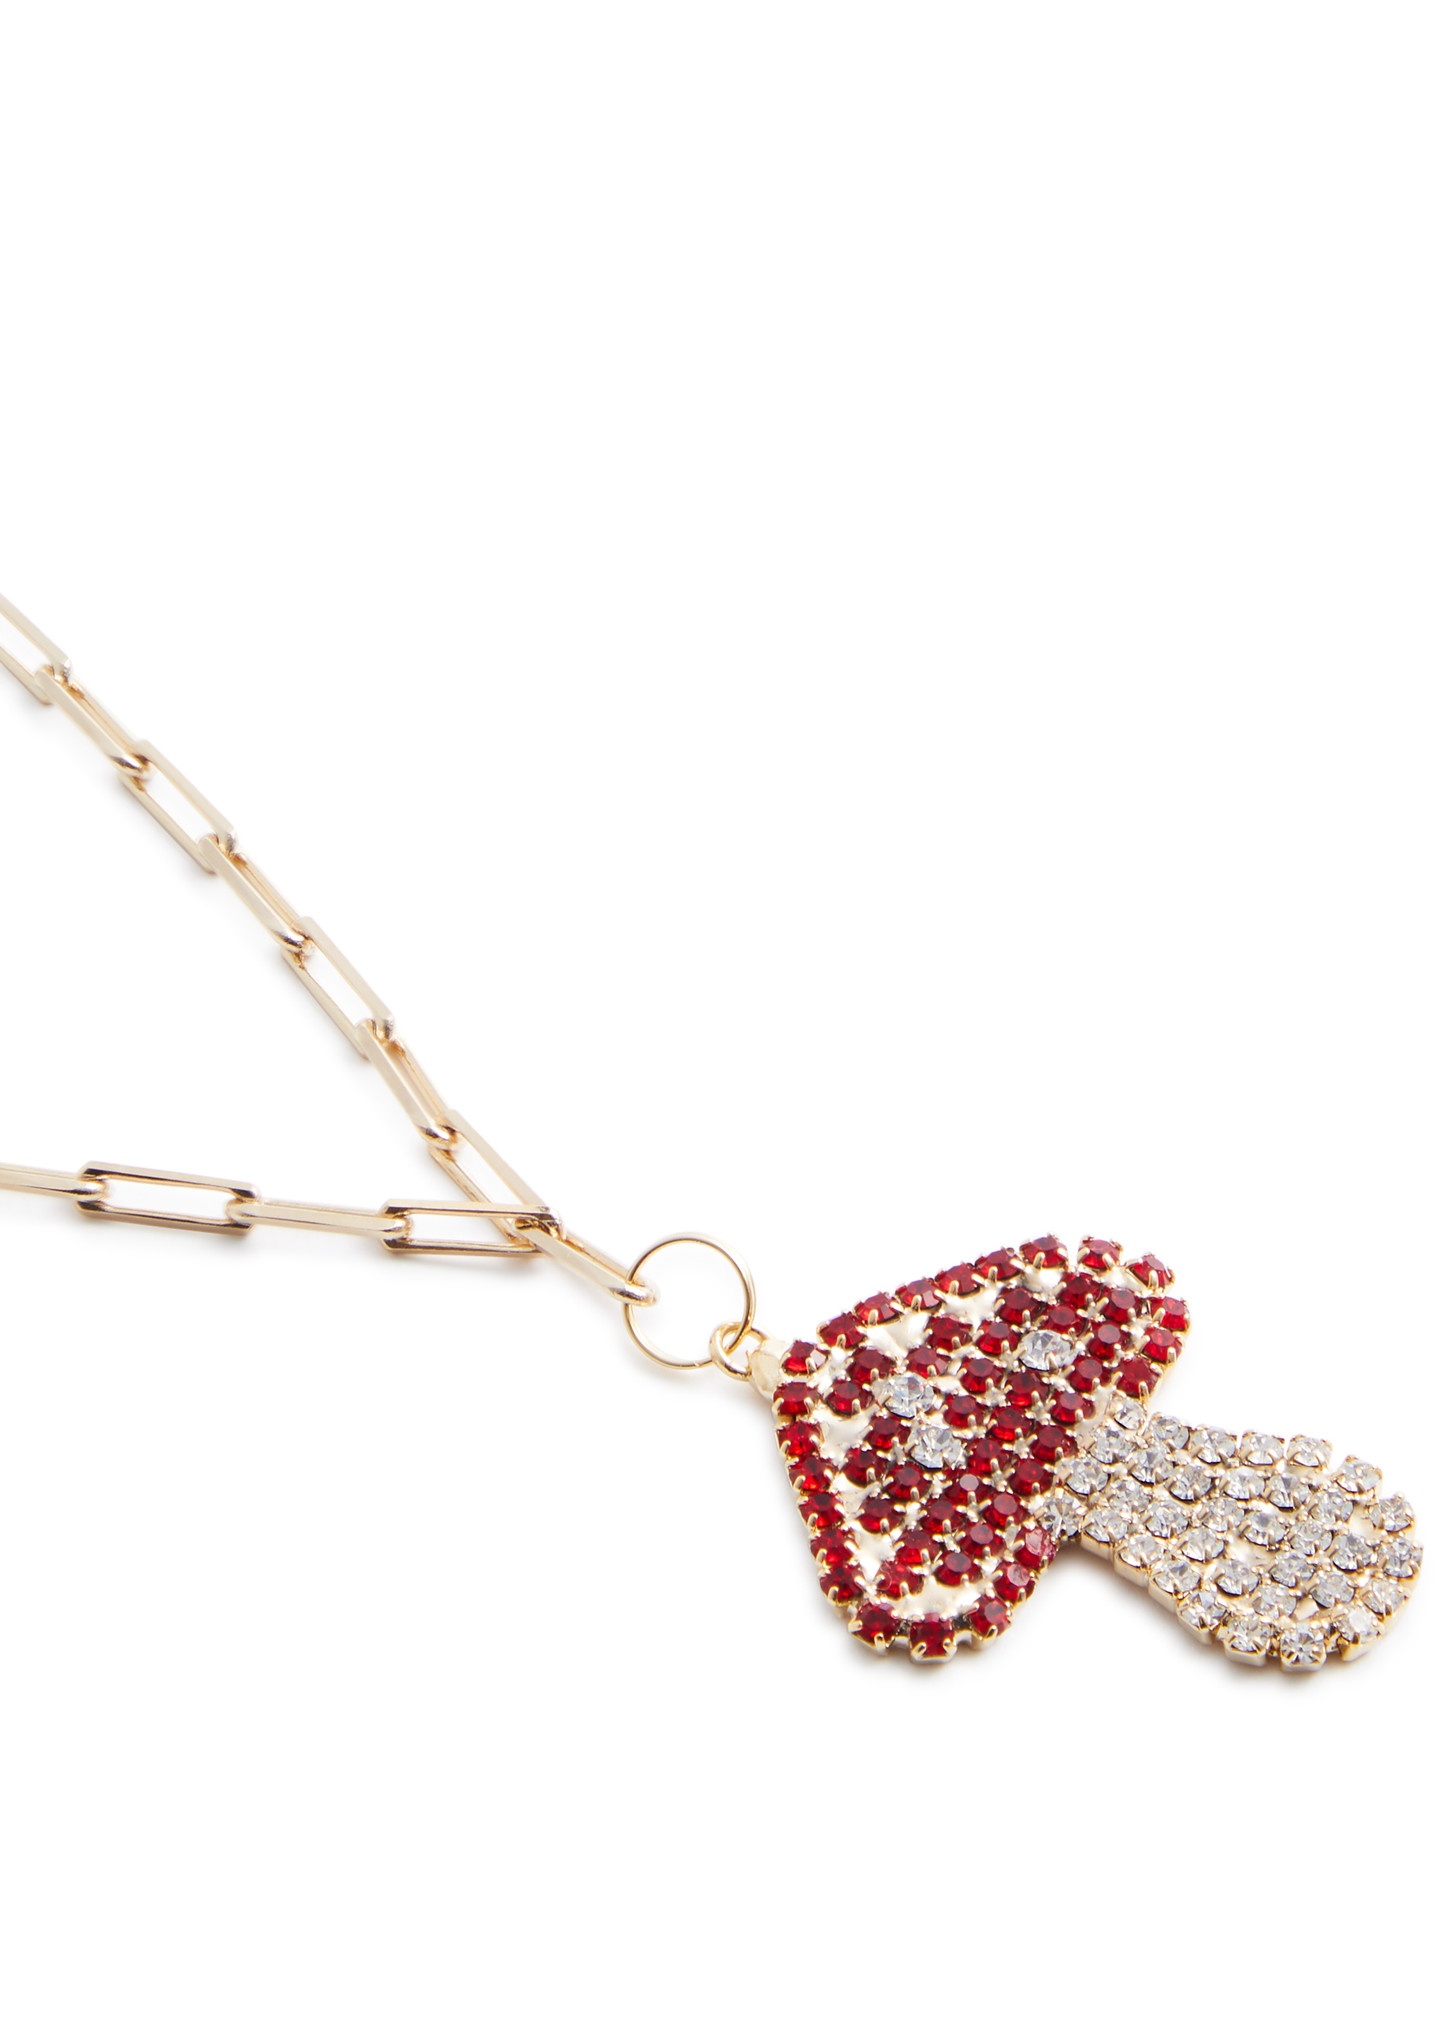 Finferli crystal-embellished toadstool necklace - 3